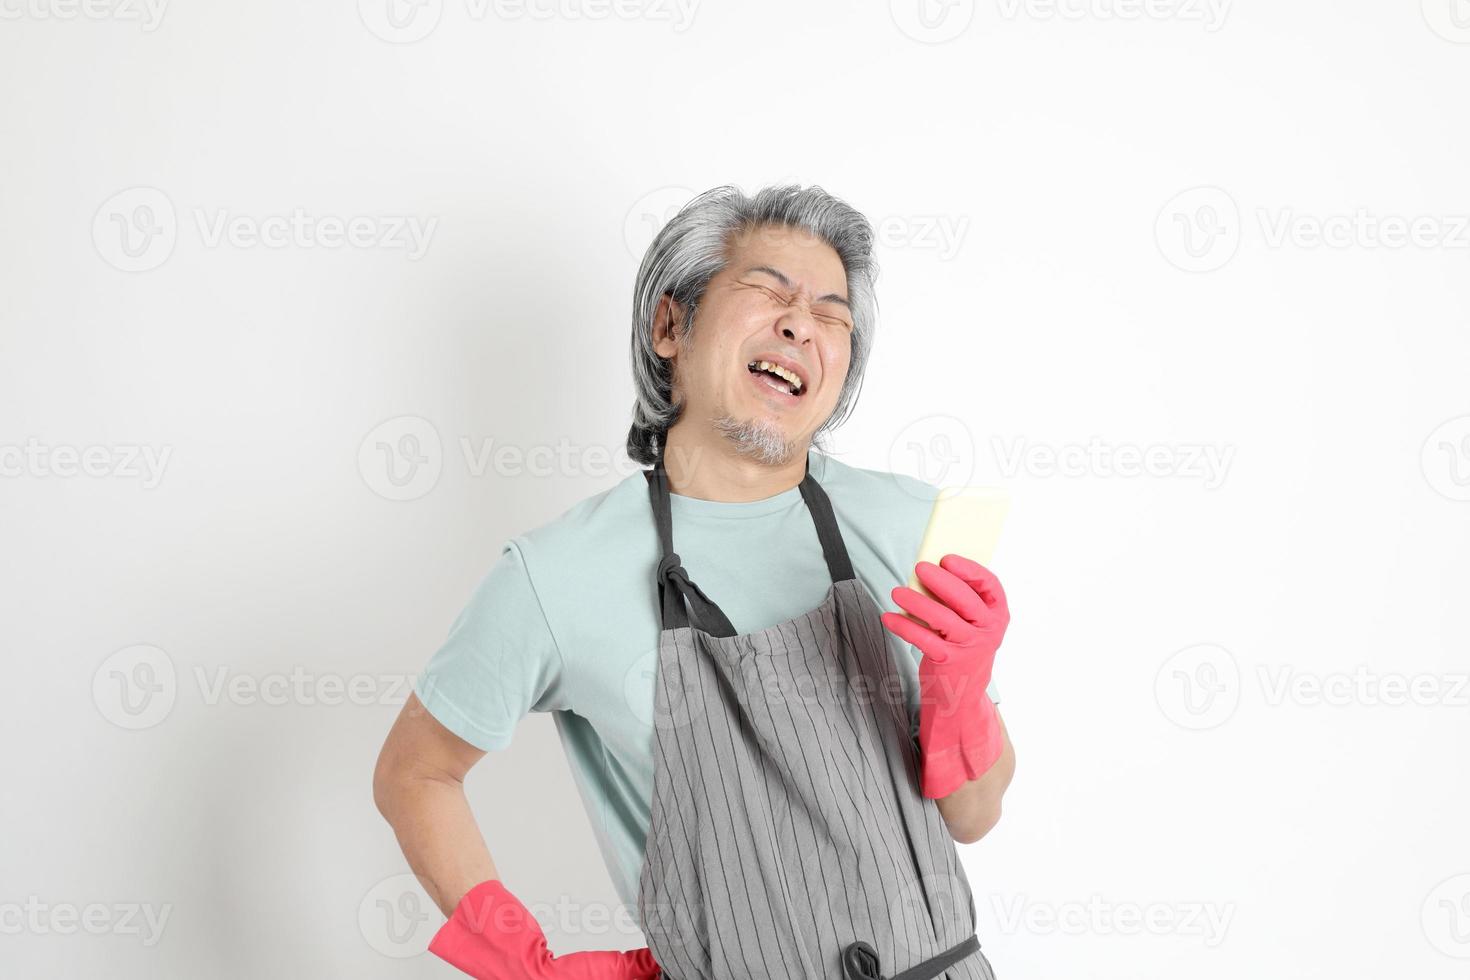 femme de ménage asiatique isolée photo